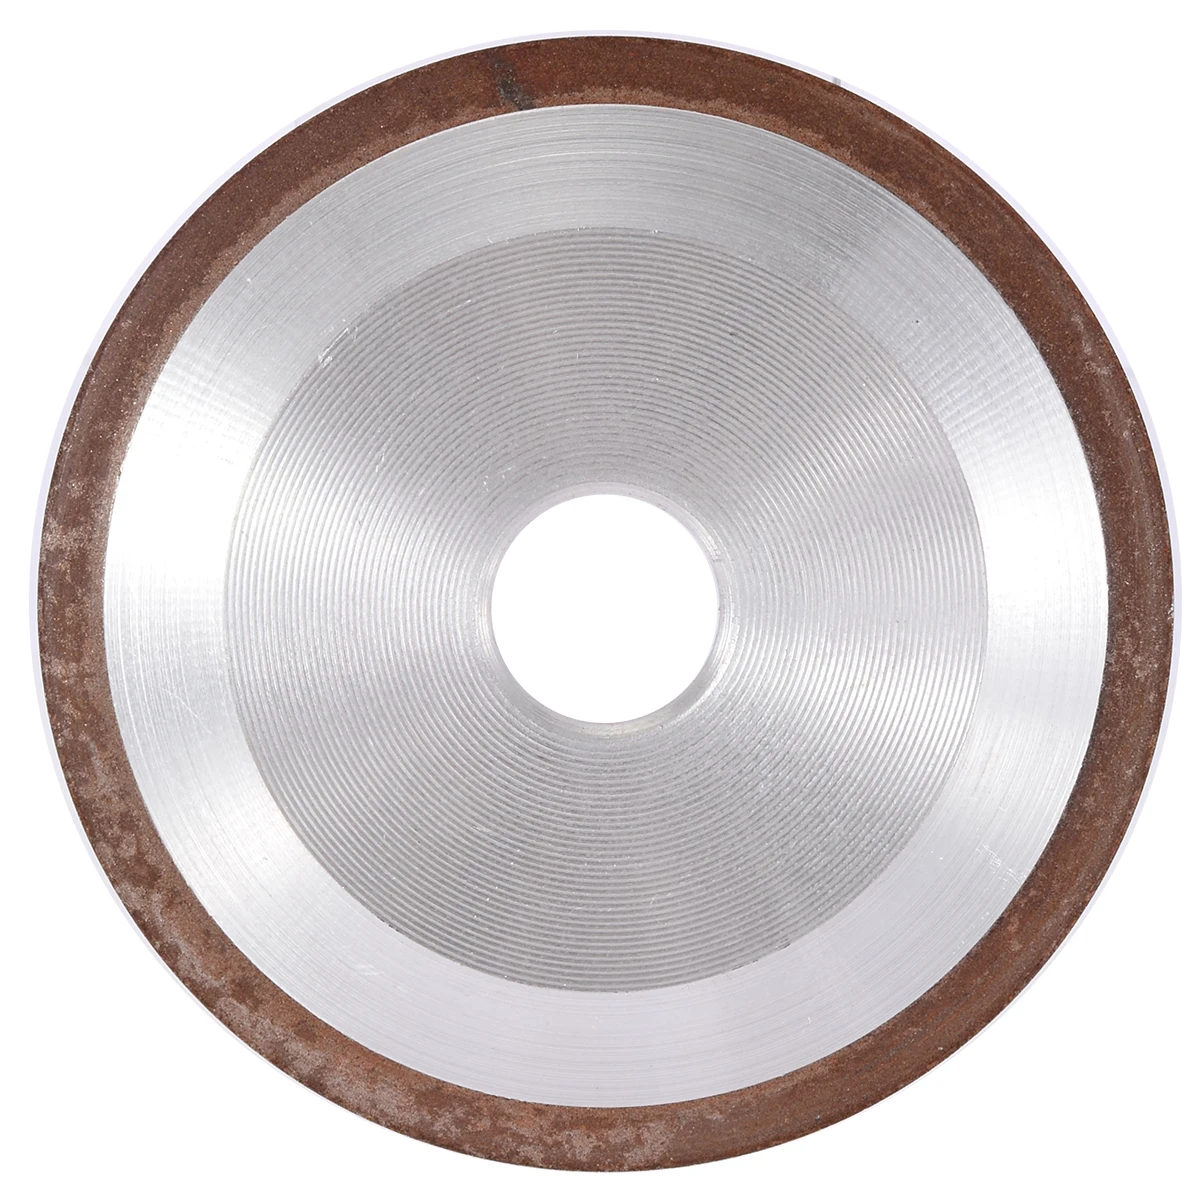 Mayitr односторонний конус смолы Алмазный шлифовальный круг диск заточка наждачные электроинструменты 125 мм 150 Зернистость